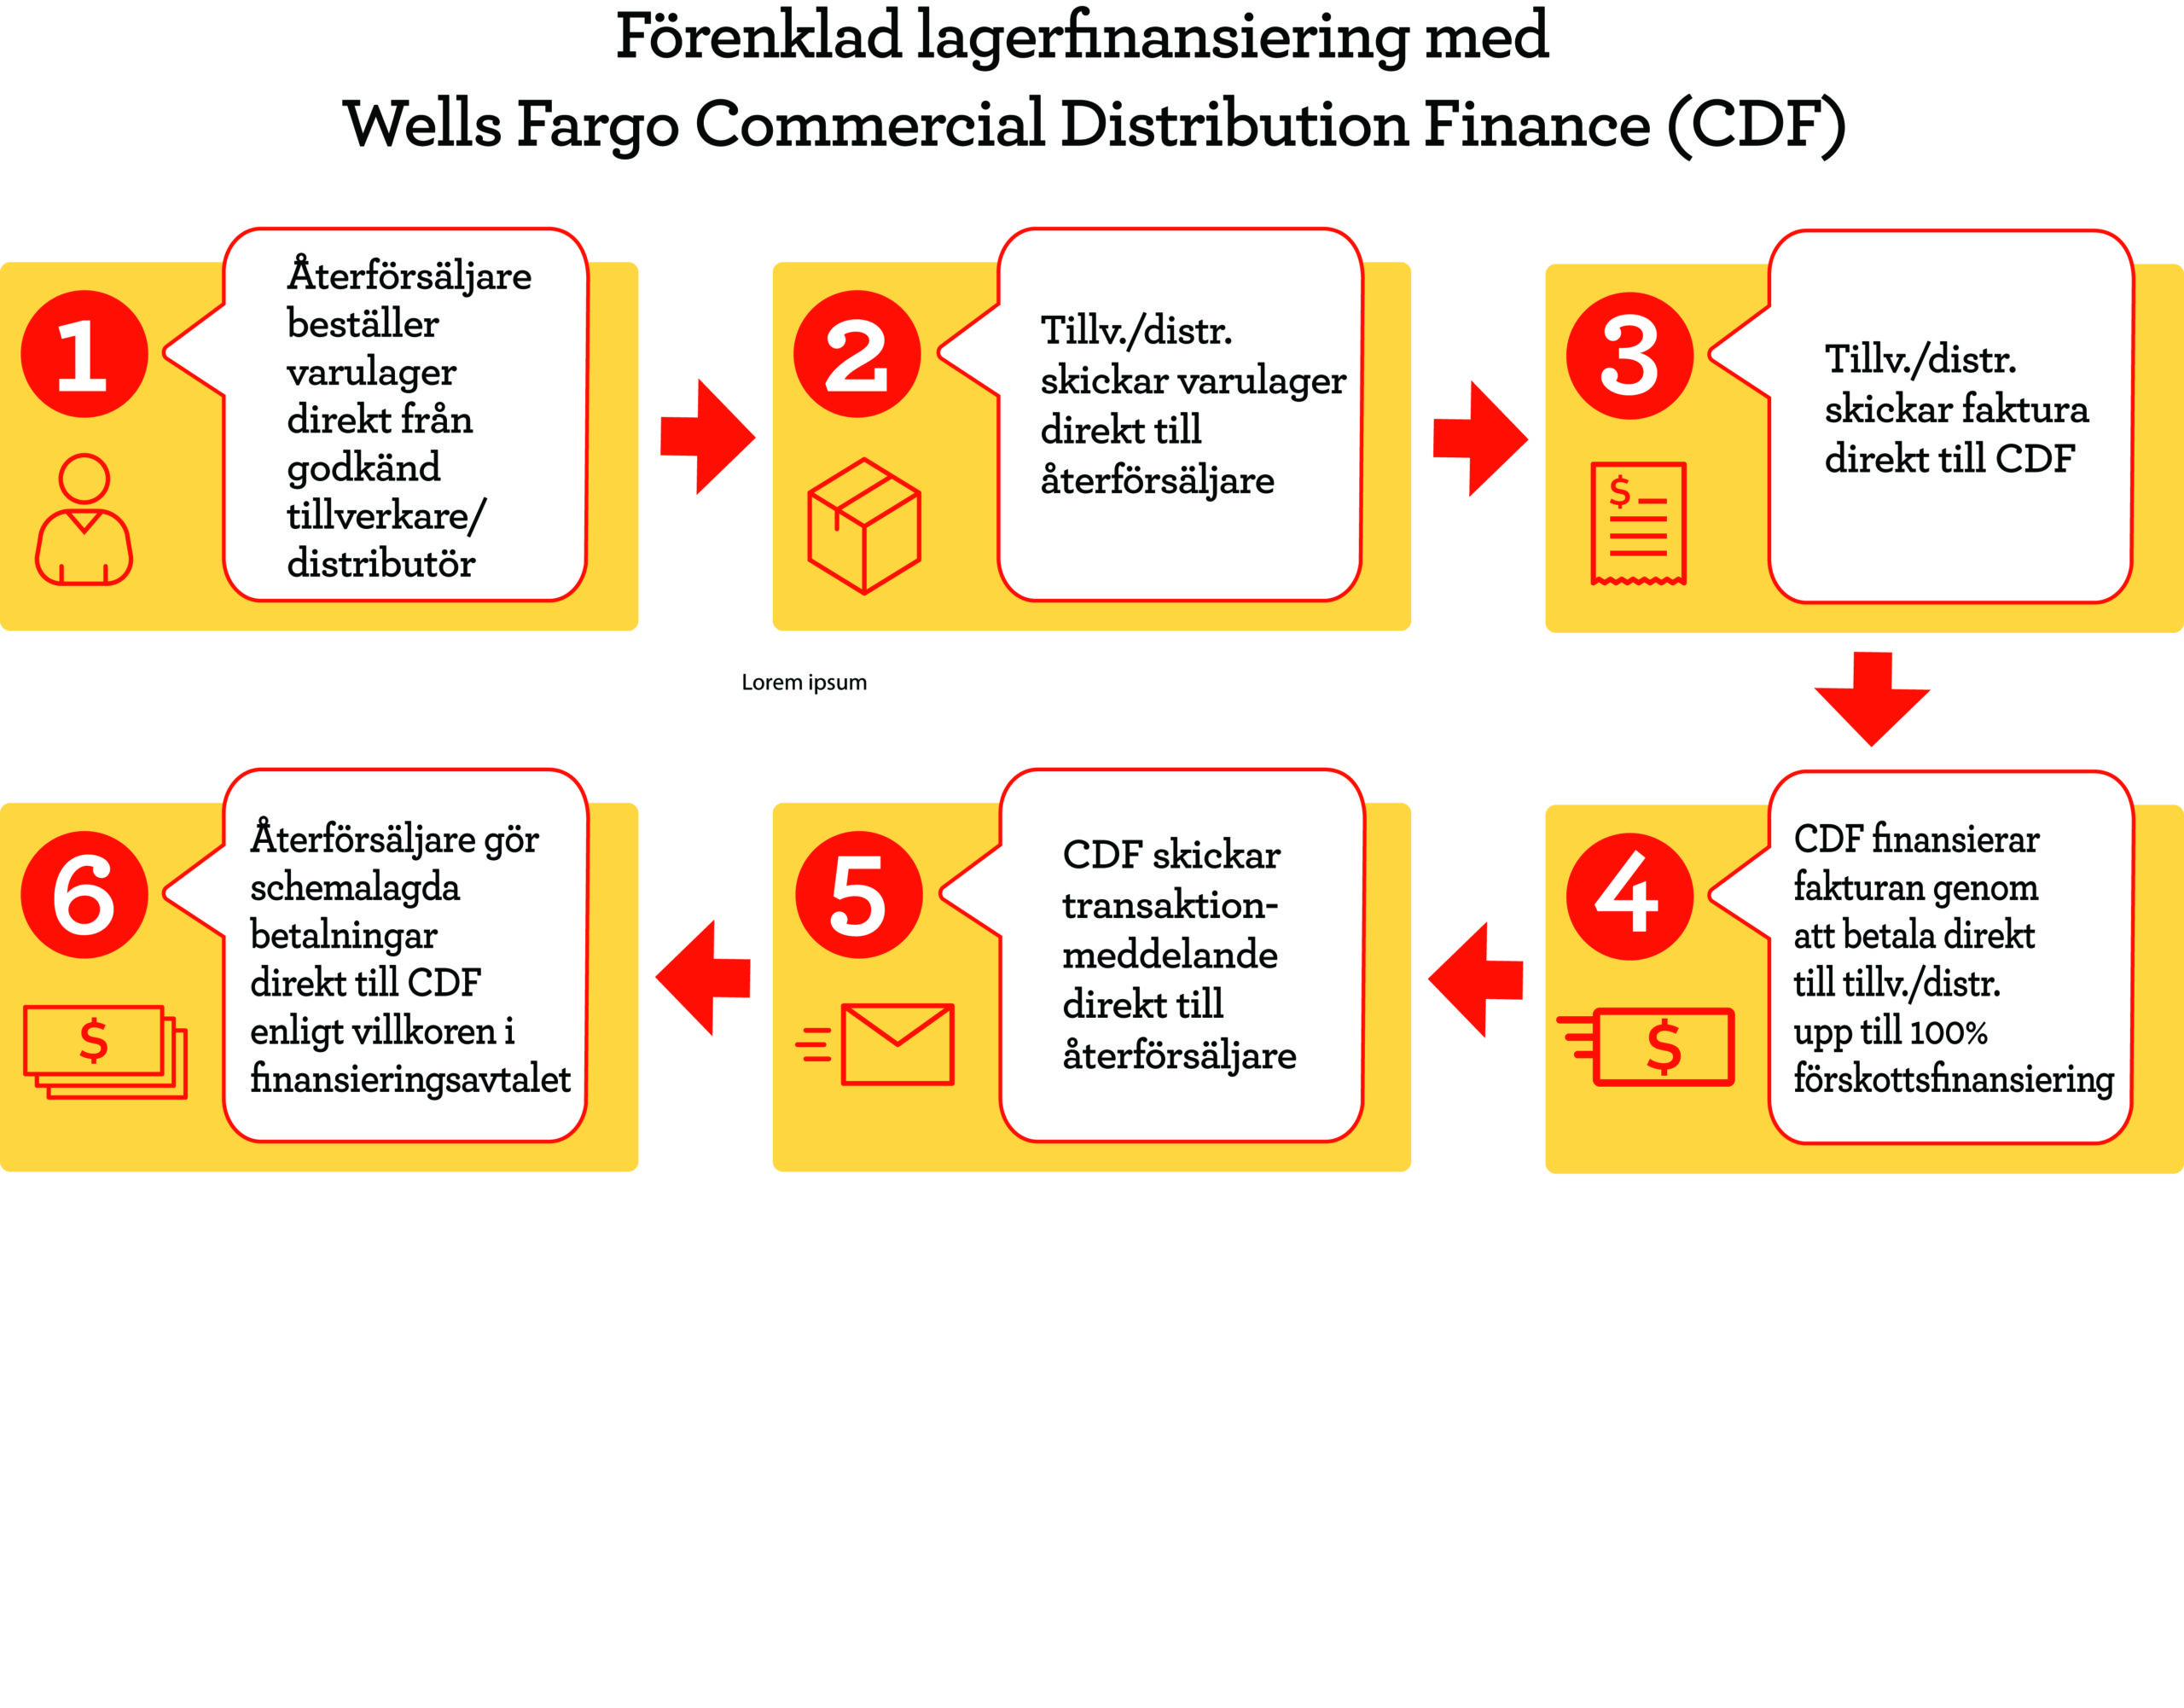 Förenklad lagerfinansiering med Wells Fargo Commercial Distribution Finance (CDF) 1. Återförsäljare beställer varulager direkt från godkänd tillverkare/distributör. 2. Tillv./distr. skickar varulager direkt till återförsäljare. 3. Tillv./distr. skickar faktura direkt till CDF. 4. CDF finansierar fakturan genom att betala direkt till tillv./distr. upp till 100 % förskottsfinansiering. 5. CDF skickar transaktionsmeddelande direkt till återförsäljare 6.Återförsäljare gör schemalagda betalningar direkt till CDF enligt villkoren i finansieringsavtalet.